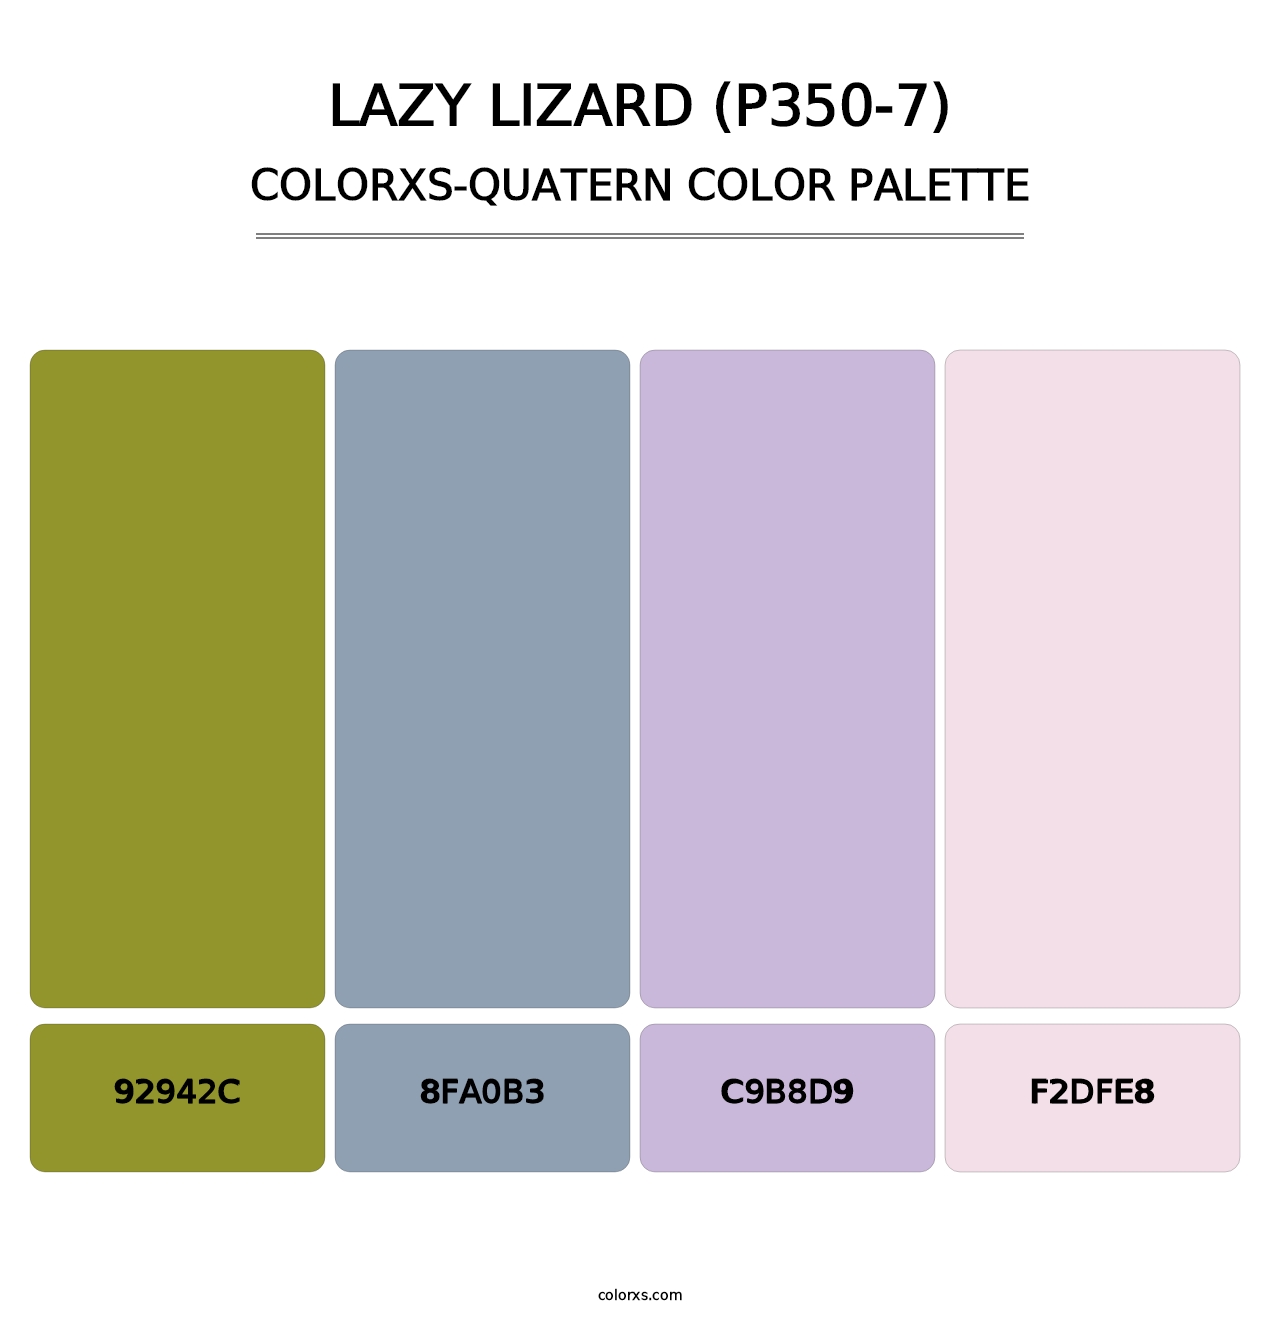 Lazy Lizard (P350-7) - Colorxs Quatern Palette